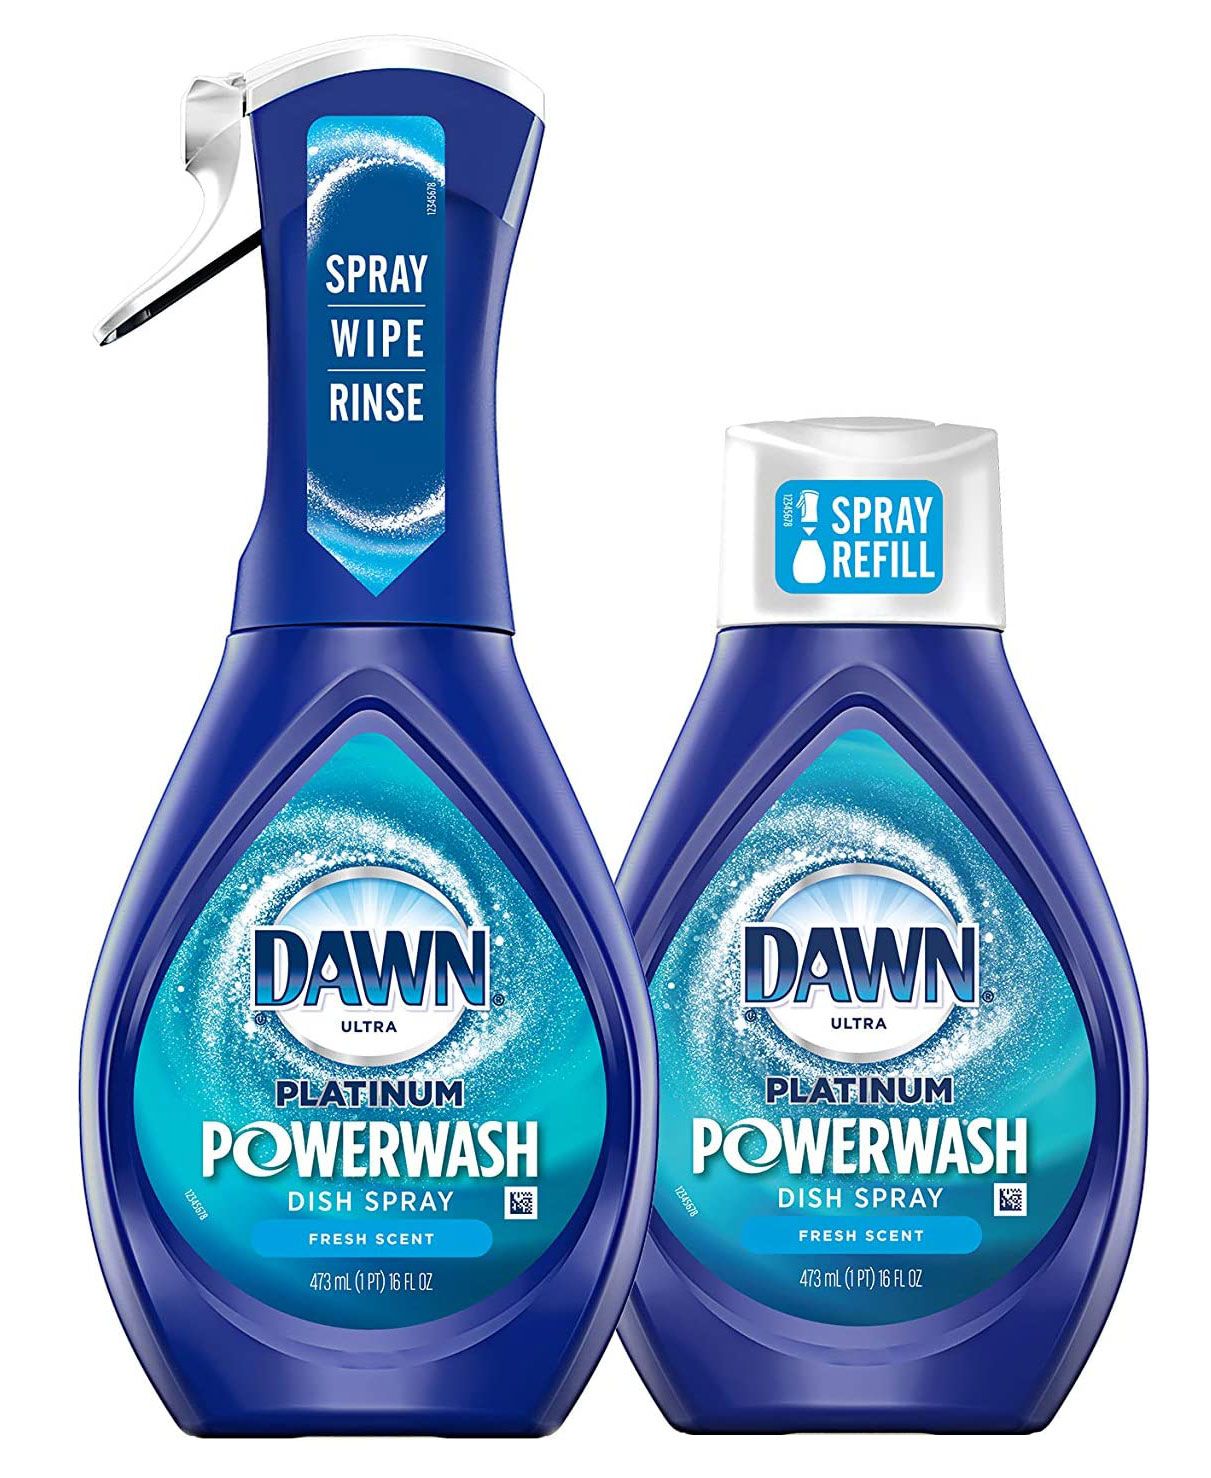 เคลฟเวอร์เรสต์ ไอเทม 2020 - Dawn Platinum Powerwash